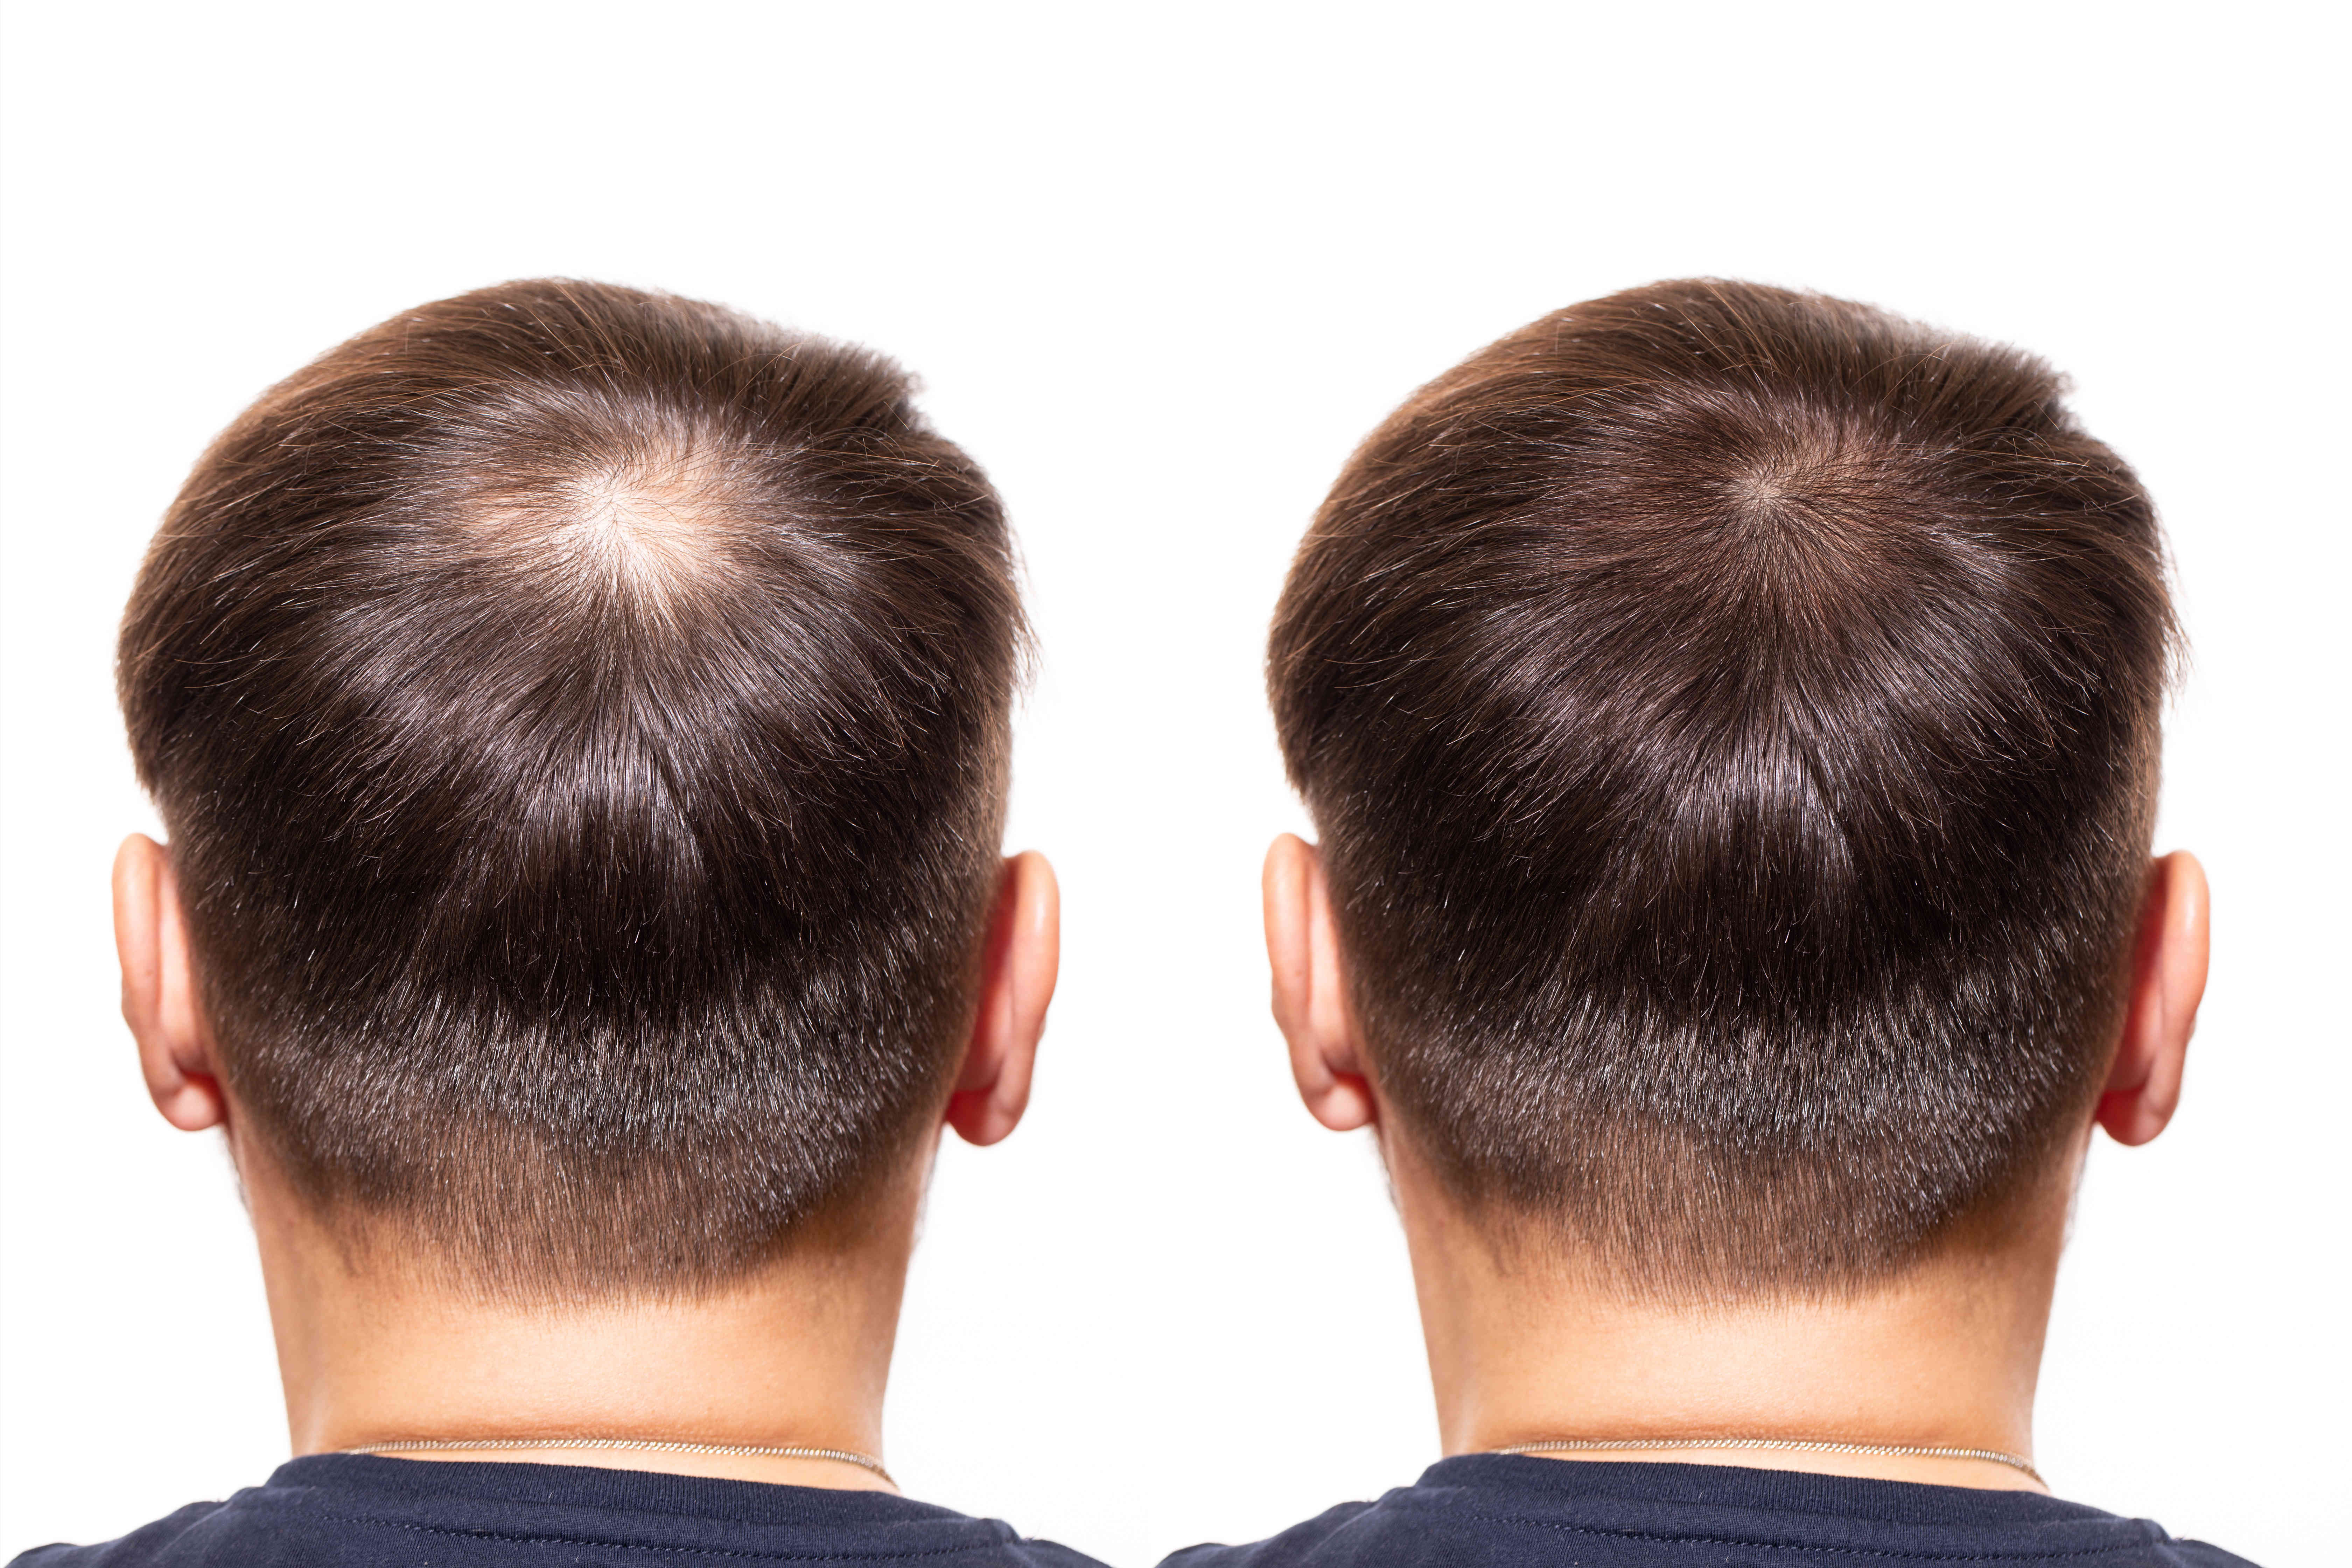 Макушка волос у мужчин. Хайр мен мезотерапия для волос. Мезотерапия волос мужчин. Мезотерапия волос до и после.